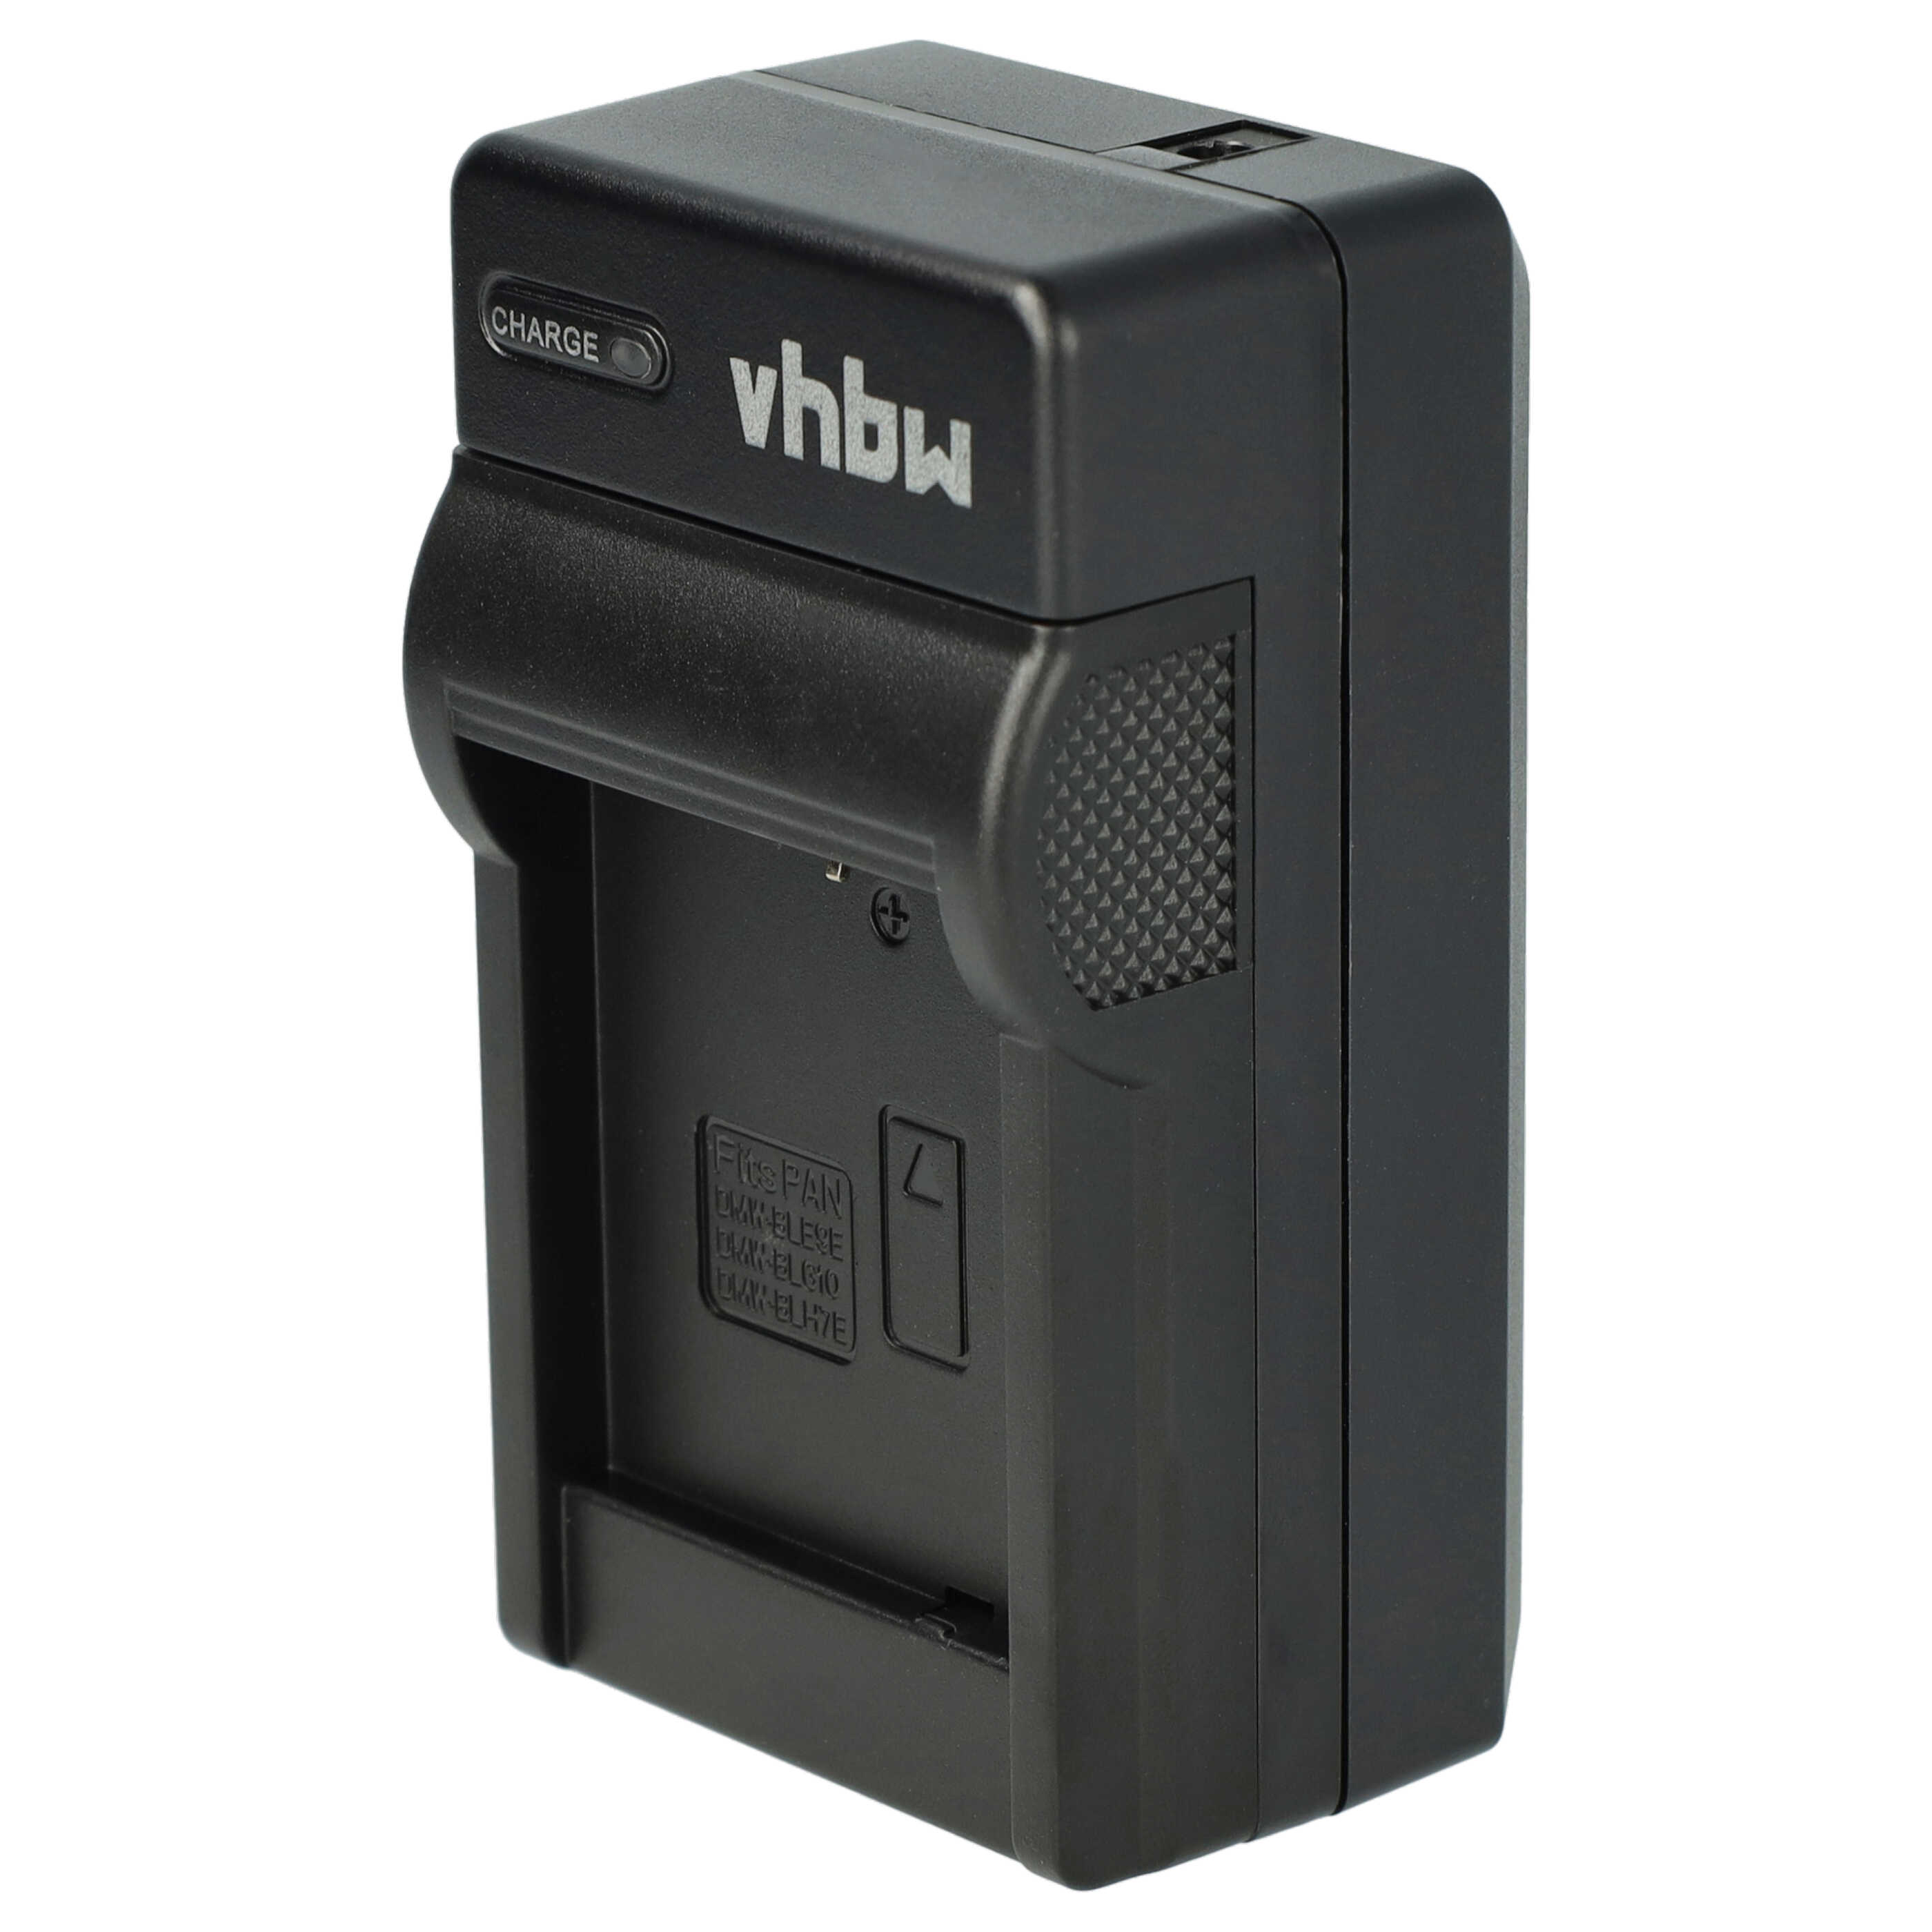 Akku Ladegerät passend für Lumix DMC-TZ101 Kamera u.a. - 0,6 A, 8,4 V